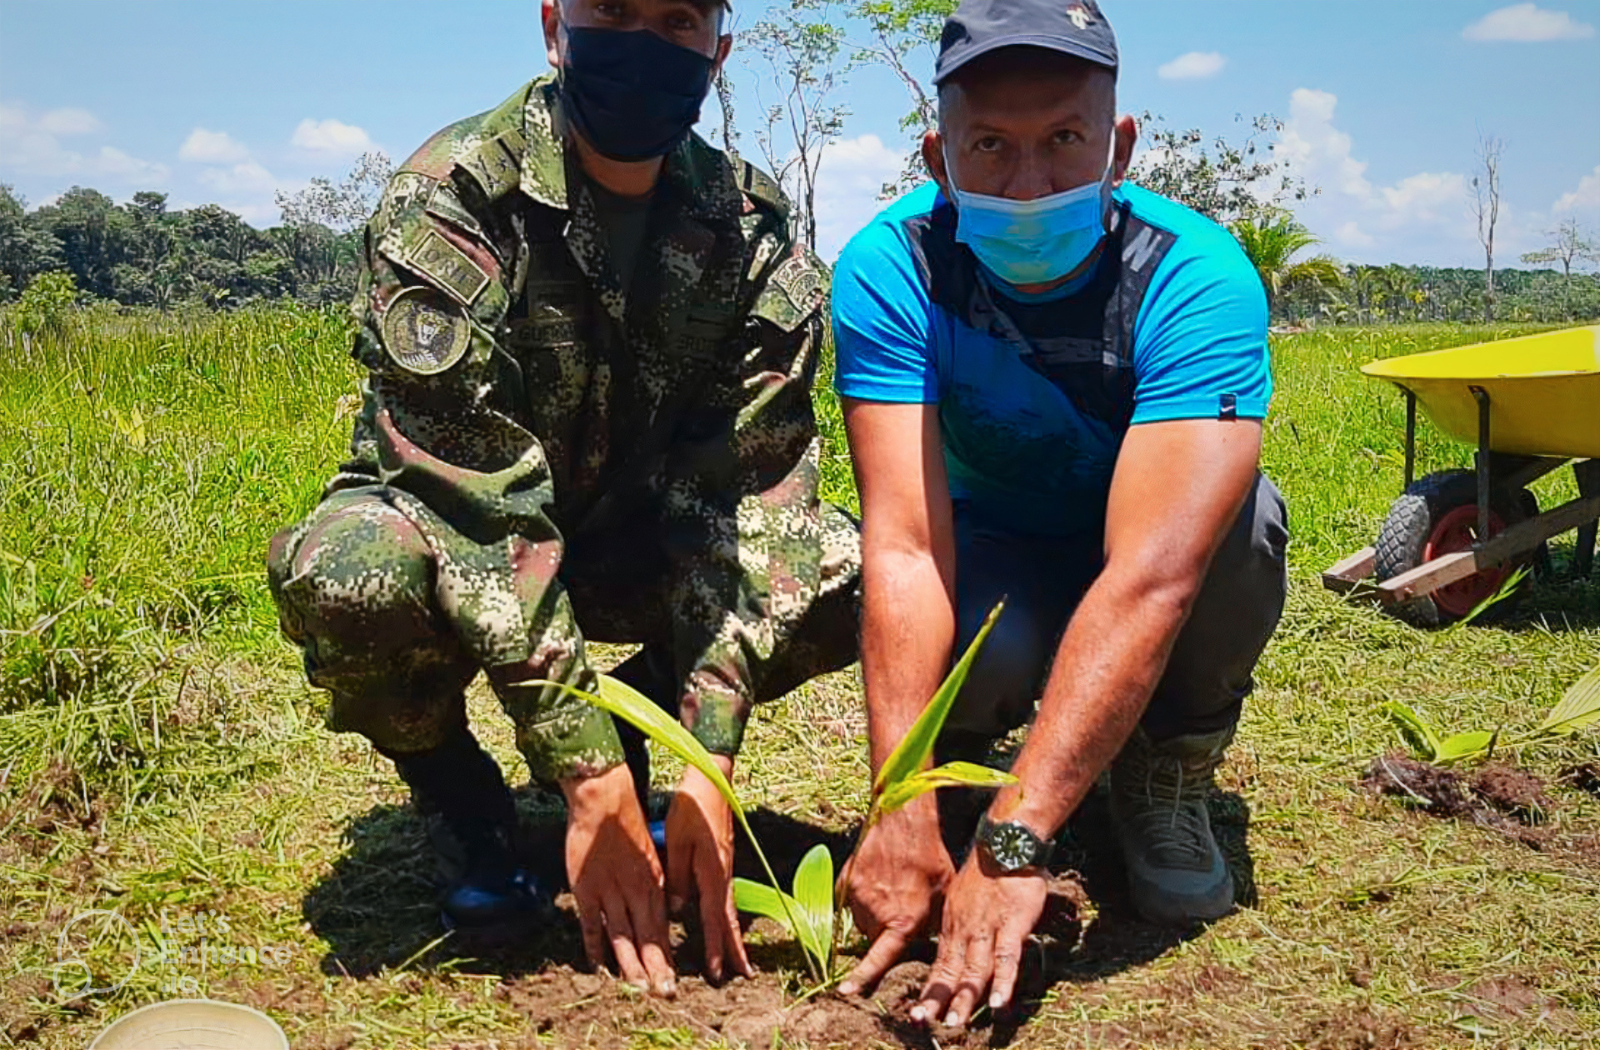 Soldat und früherer Rebellenkämpfer pflanzen zusammen Acai-Palmen